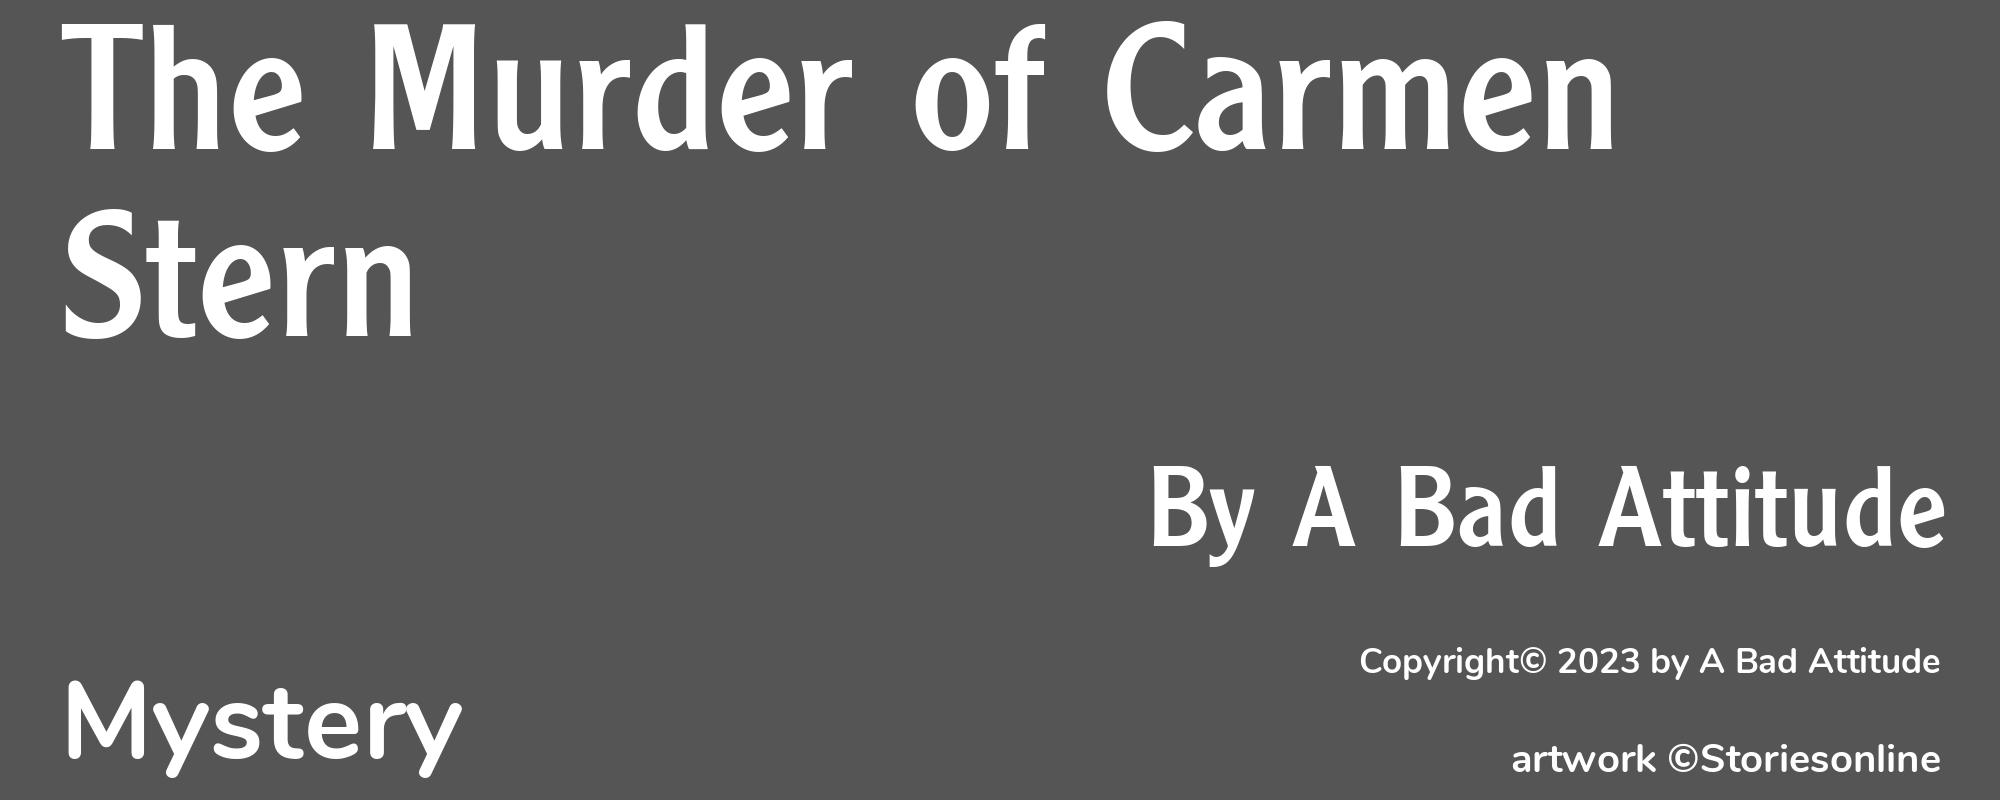 The Murder of Carmen Stern - Cover